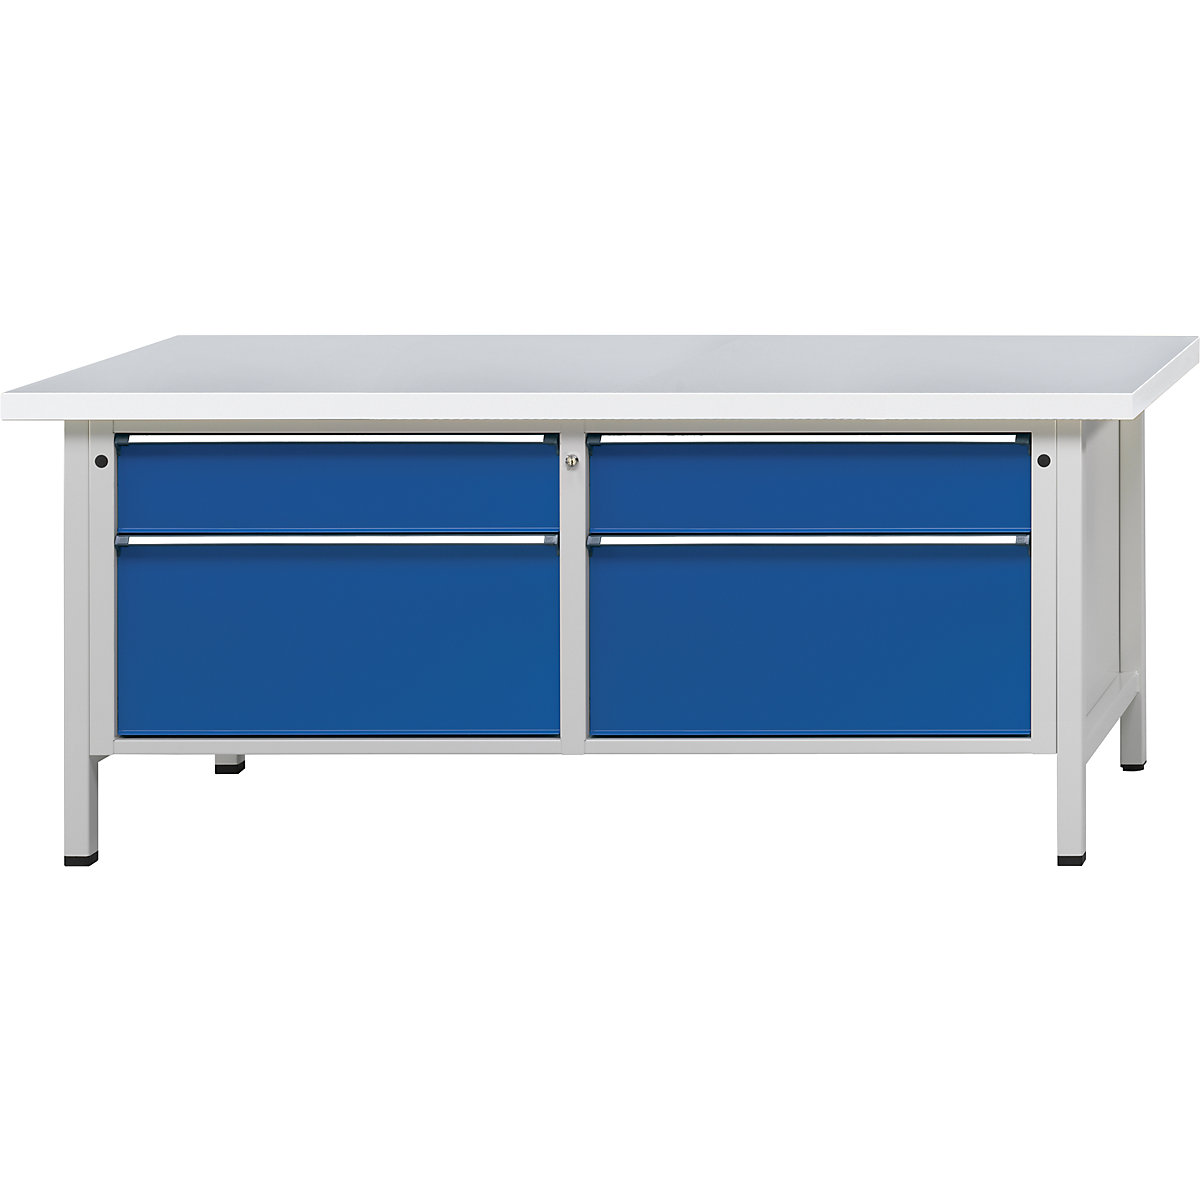 Dílenské stoly s šířkou 2000 mm, rámová konstrukce – ANKE, 4 zásuvky, univerzální deska, výška 840 mm